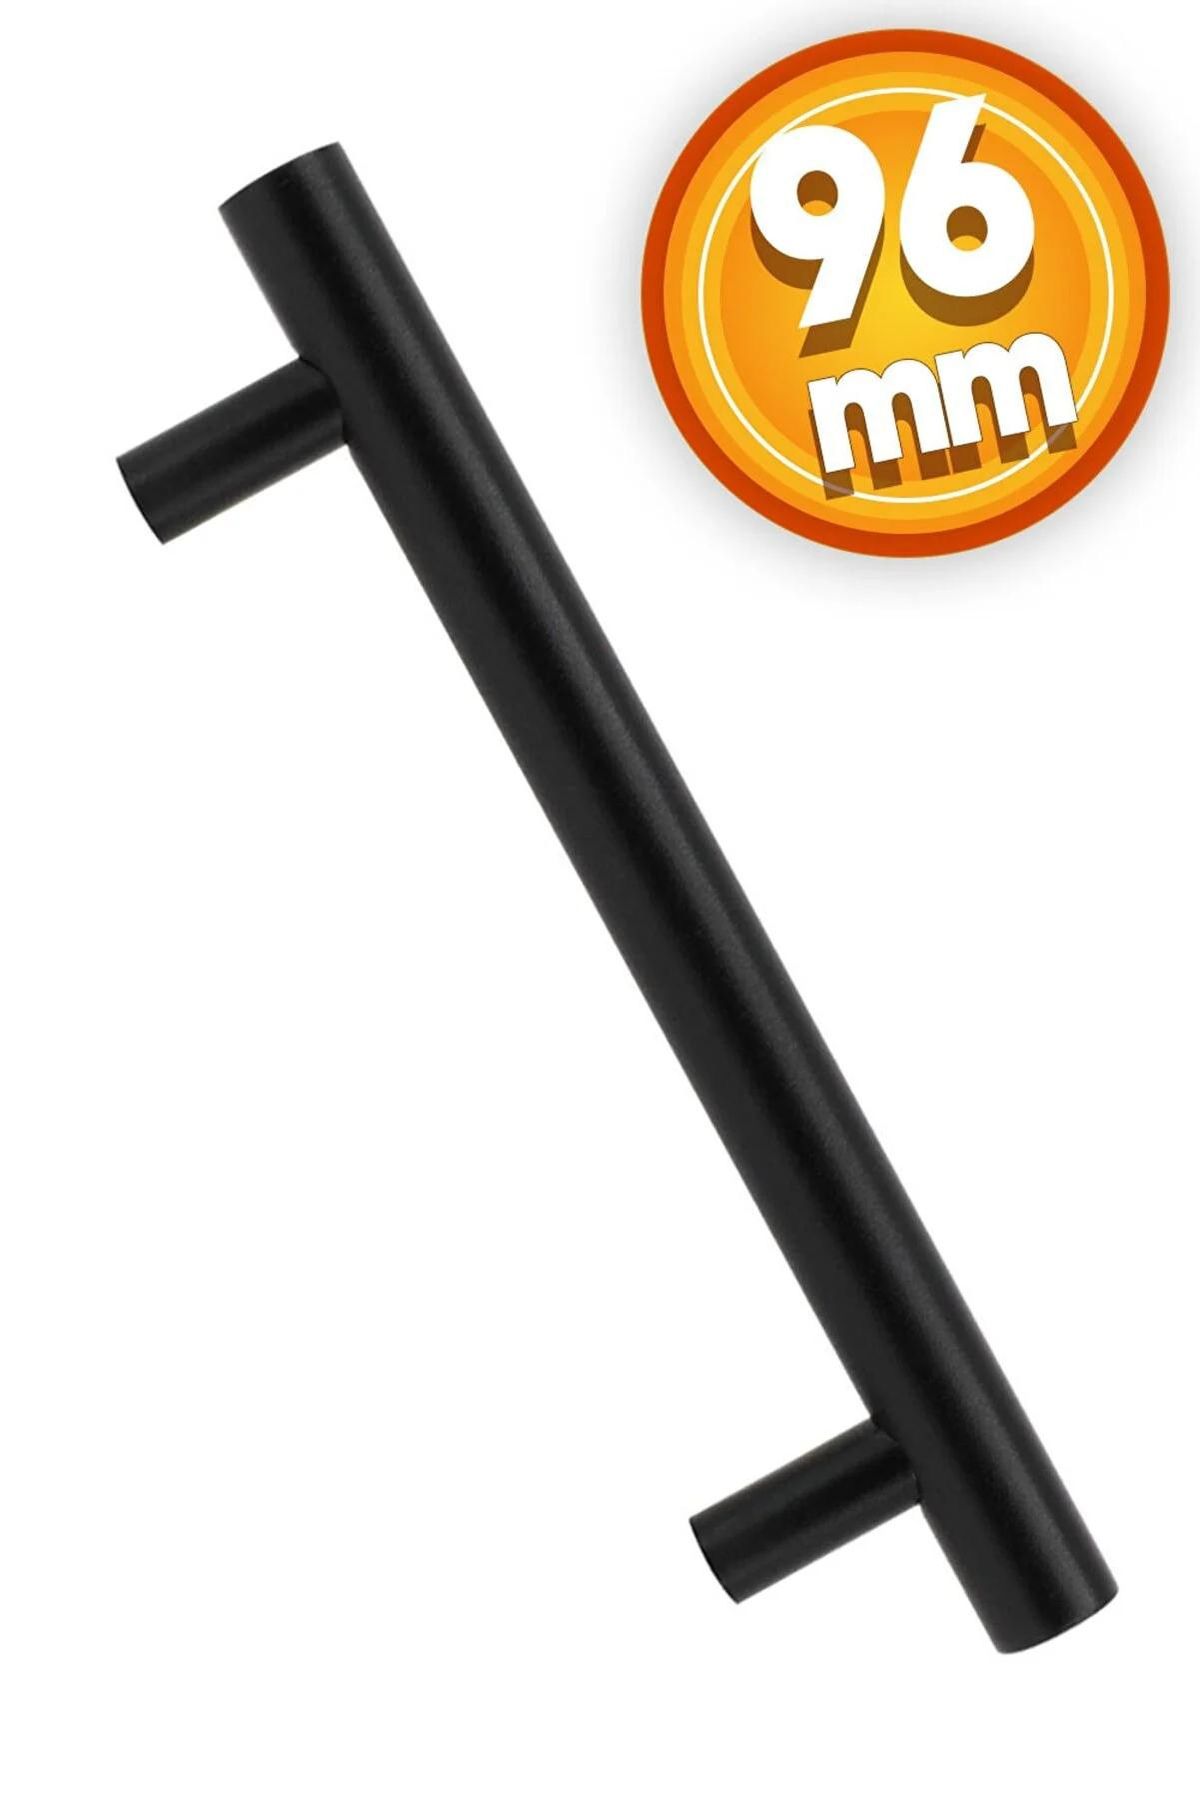 Badem10 Mobilya Dolap Kapak Çekmece Kulpu Gül Boylu Kulbu 96 mm Mat Siyah Metal Kulp